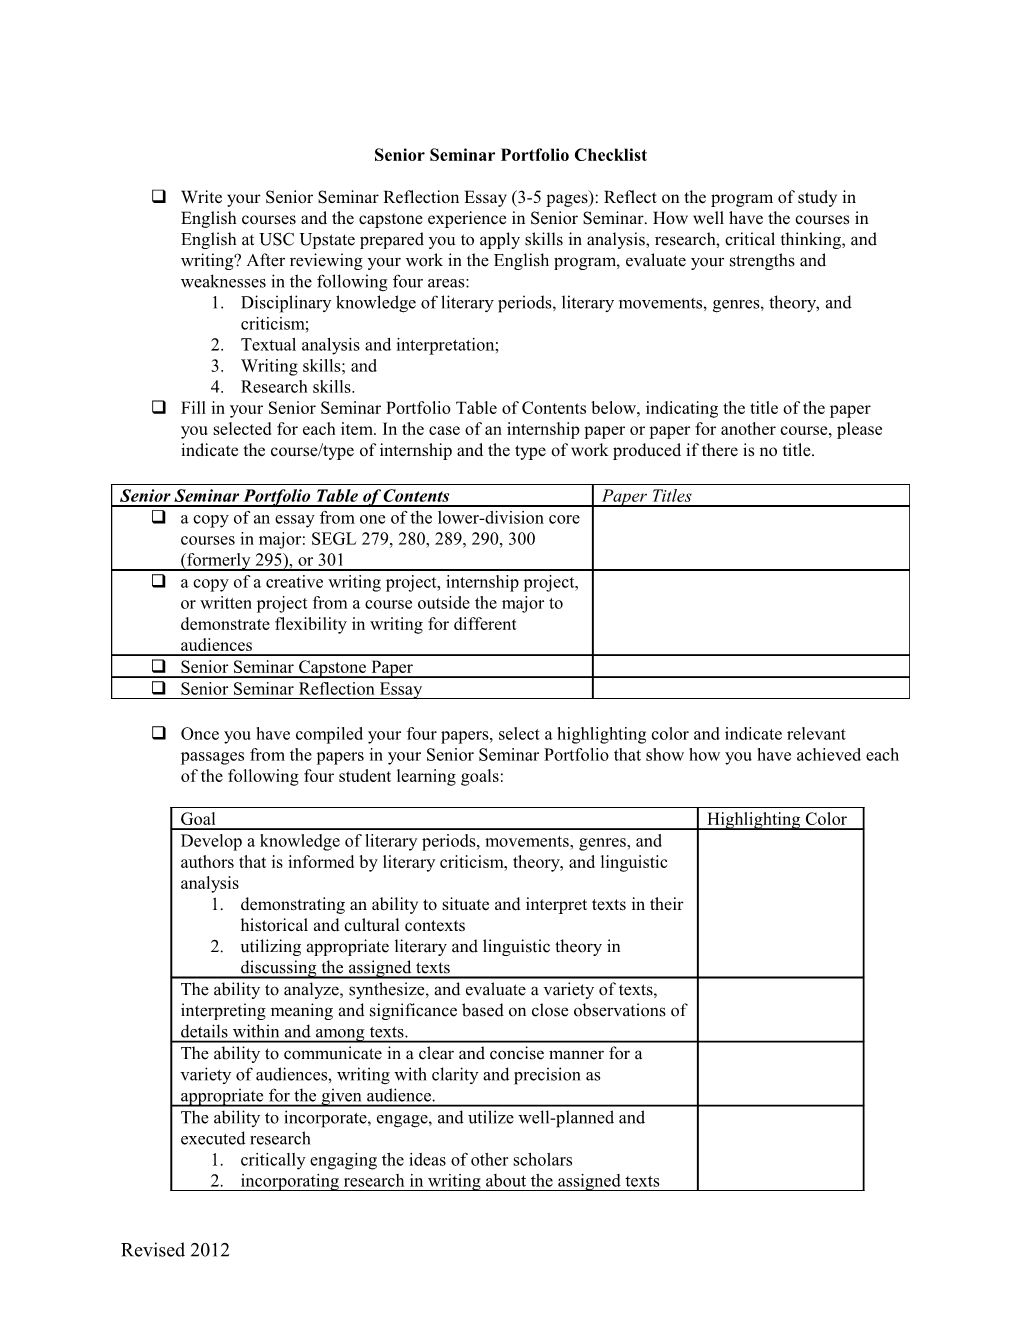 Senior Seminar Portfolio Checklist